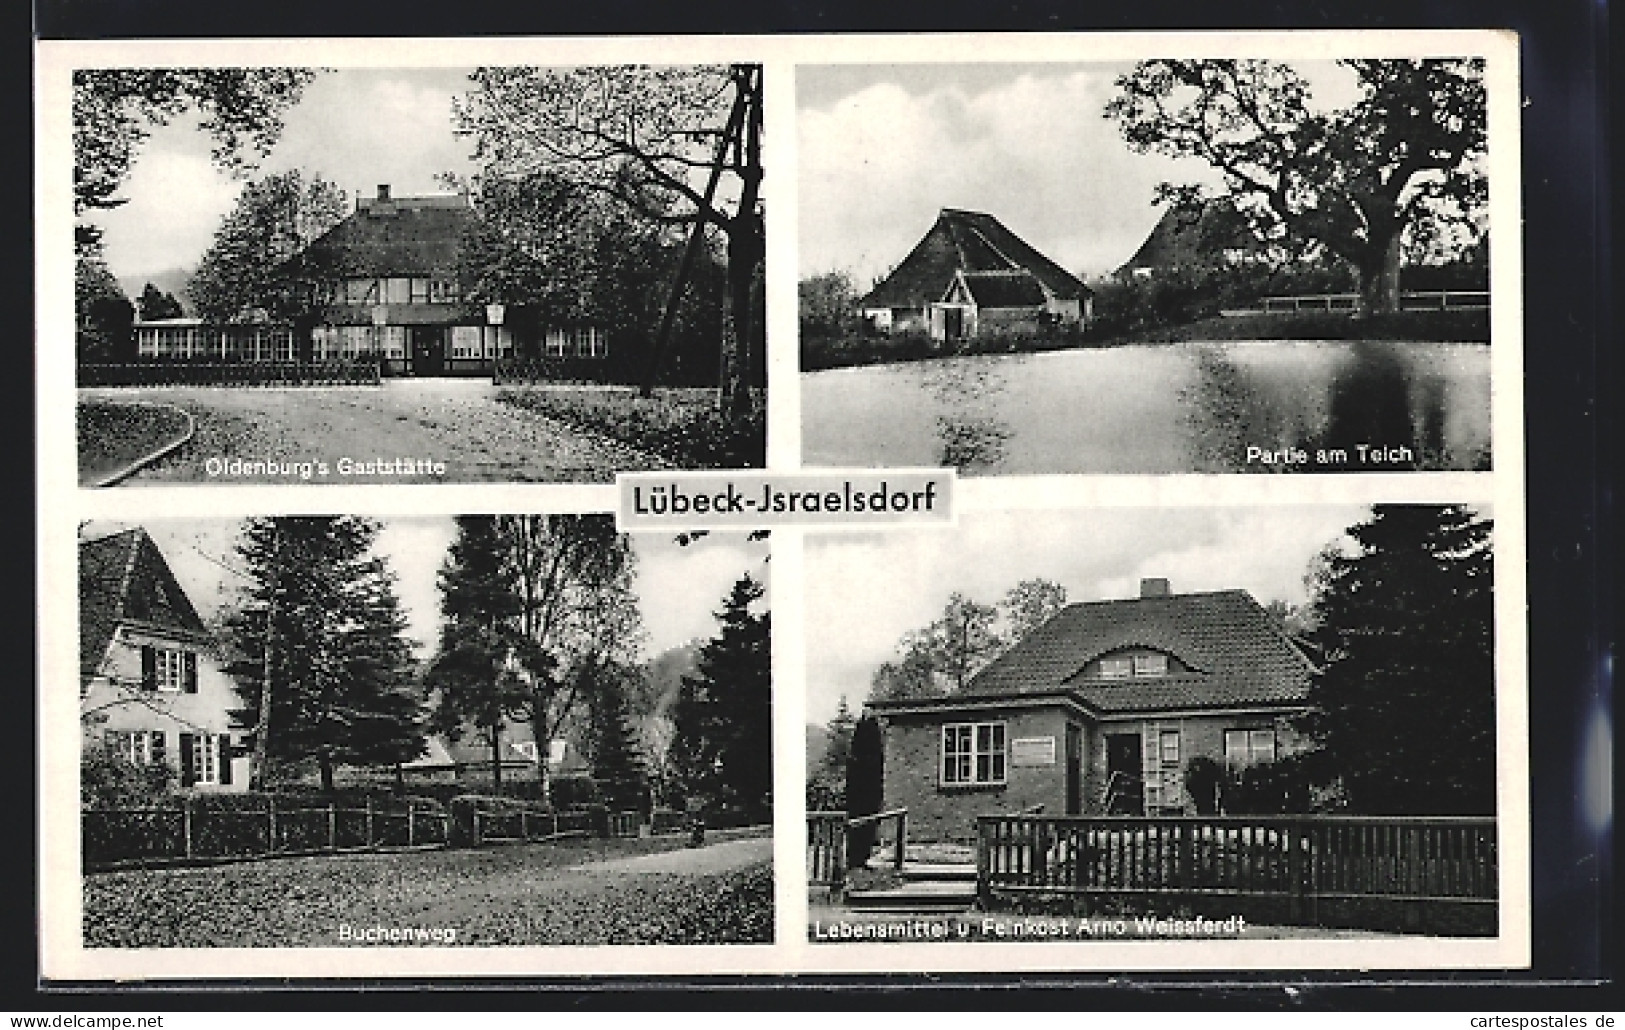 AK Lübeck-Israelsdorf, Oldenburgs Gaststätte, Lebensmittel Weissferdt, Strassenpartie Buchenweg  - Oldenburg (Holstein)